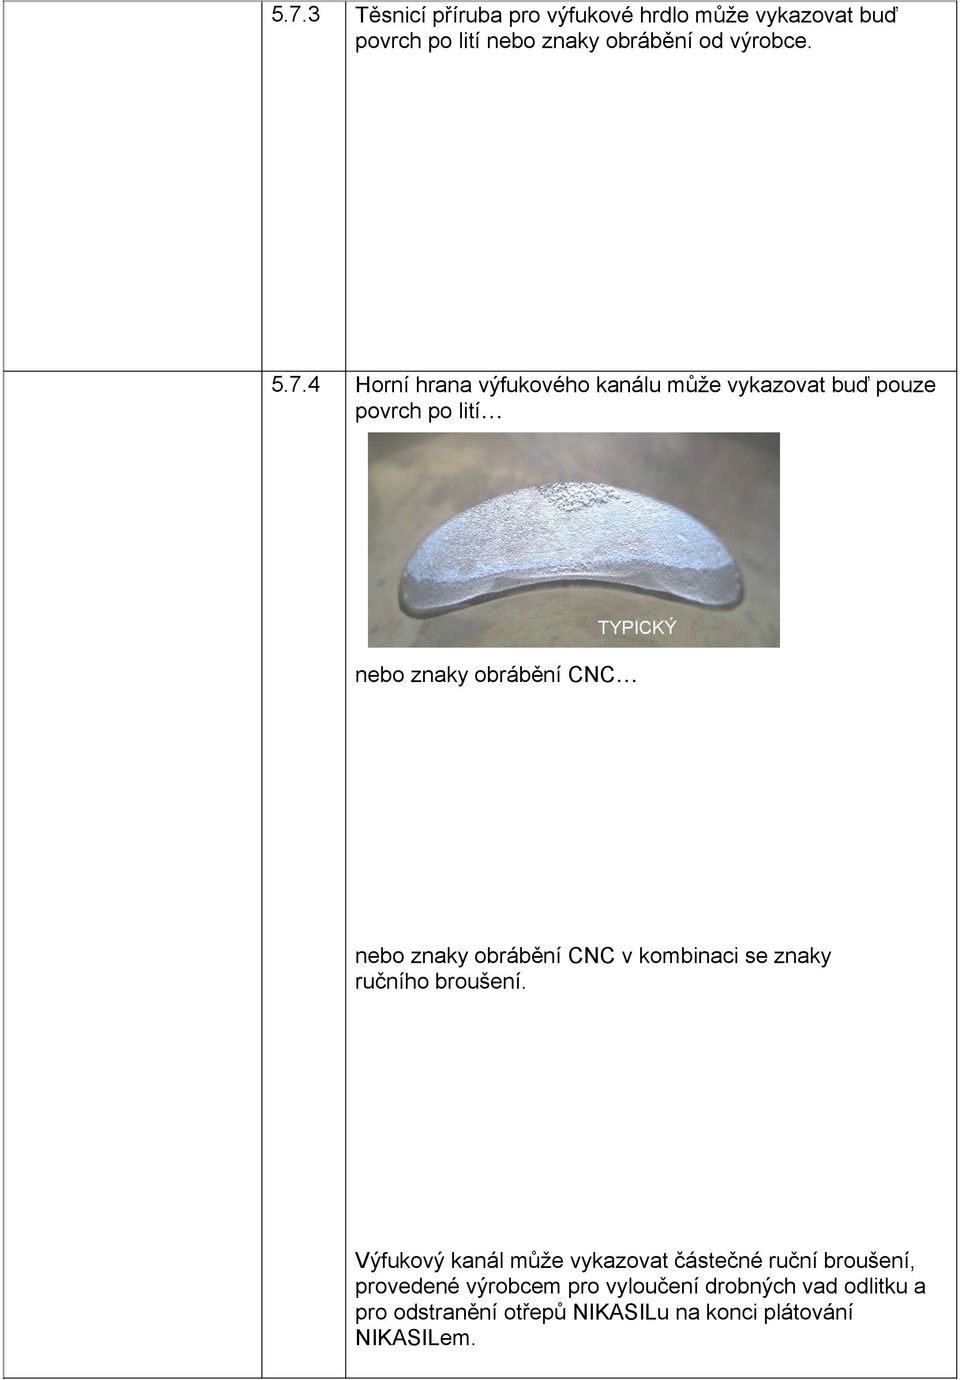 znaky obrábění CNC v kombinaci se znaky ručního broušení.